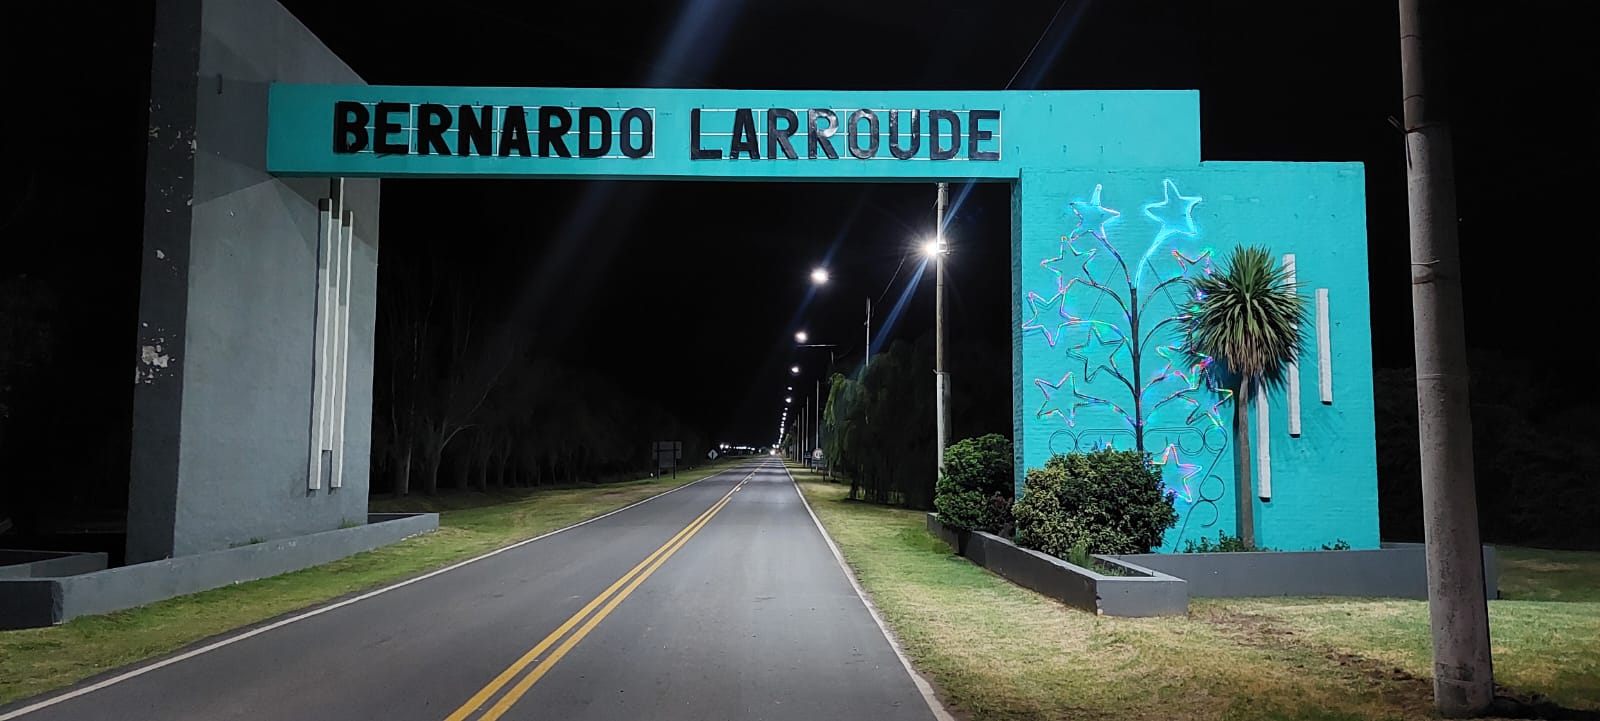 Bernardo Larroudé: celebrando 116 años de desarrollo y comunidad en La Pampa  